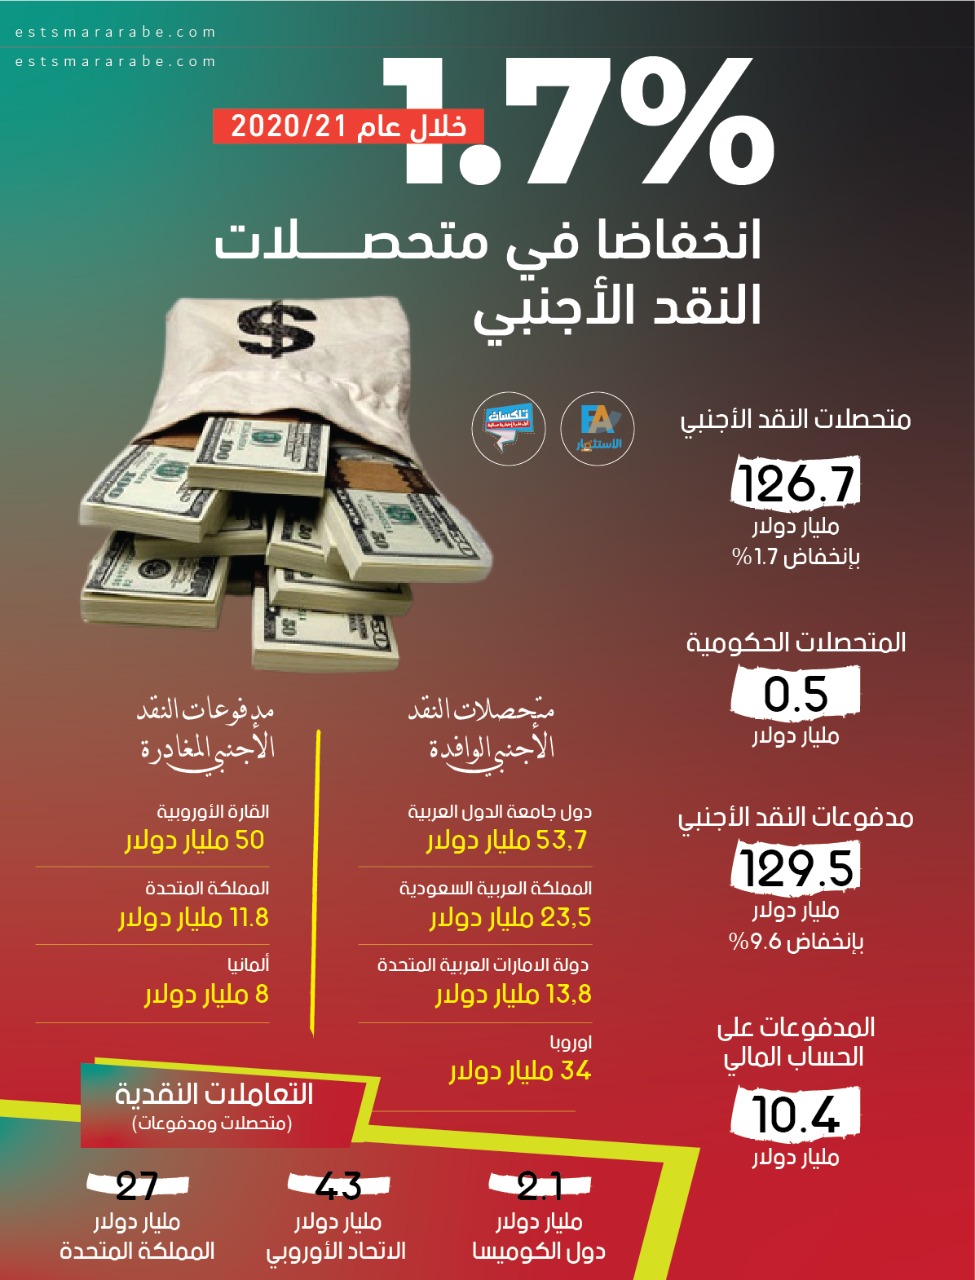 إنفوجرافيك|| متحصلات النقد الأجنبى فى مصر خلال عام 2020/21